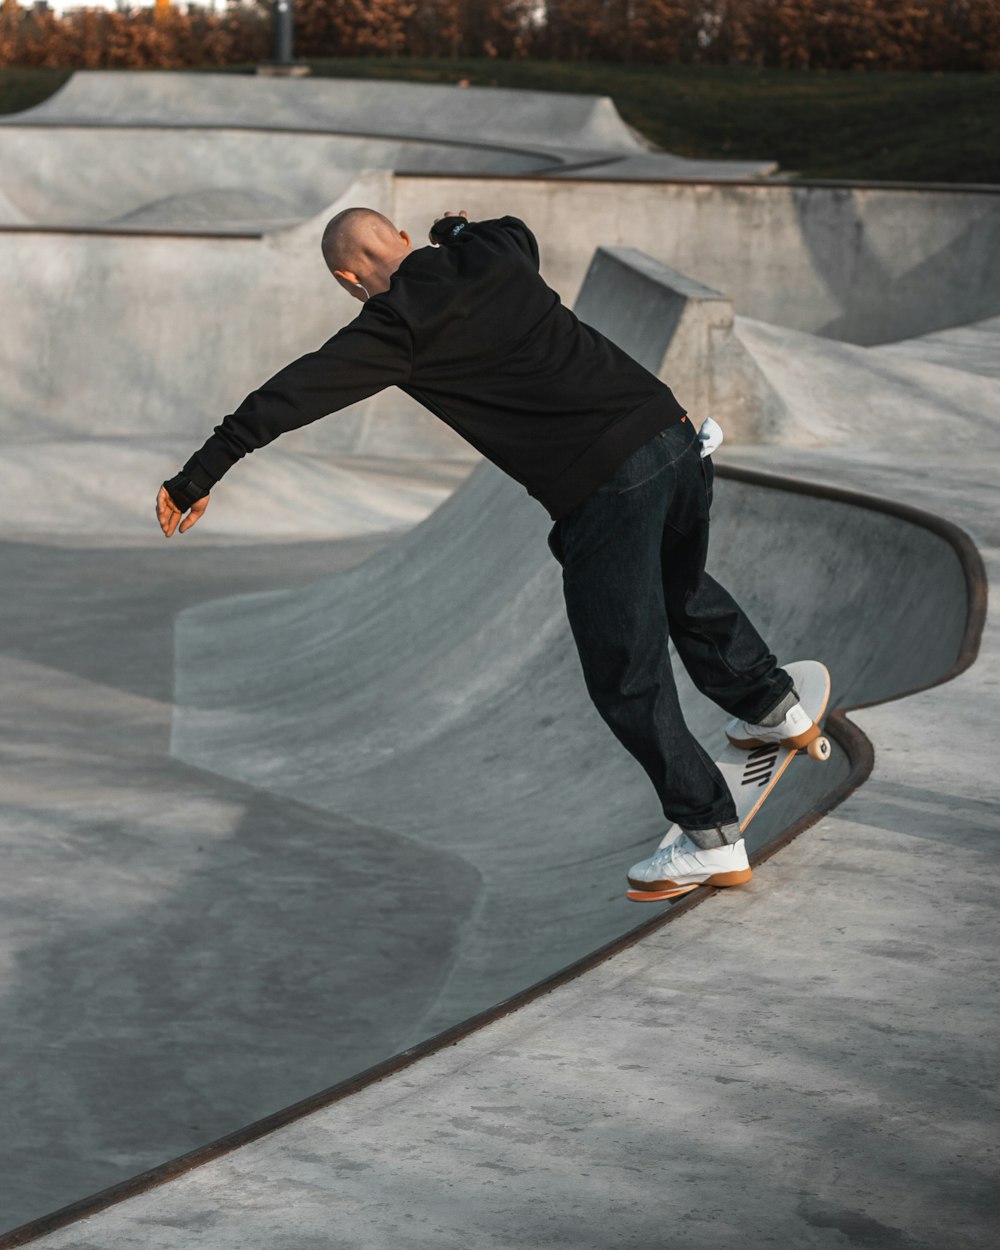 skating man on ramp